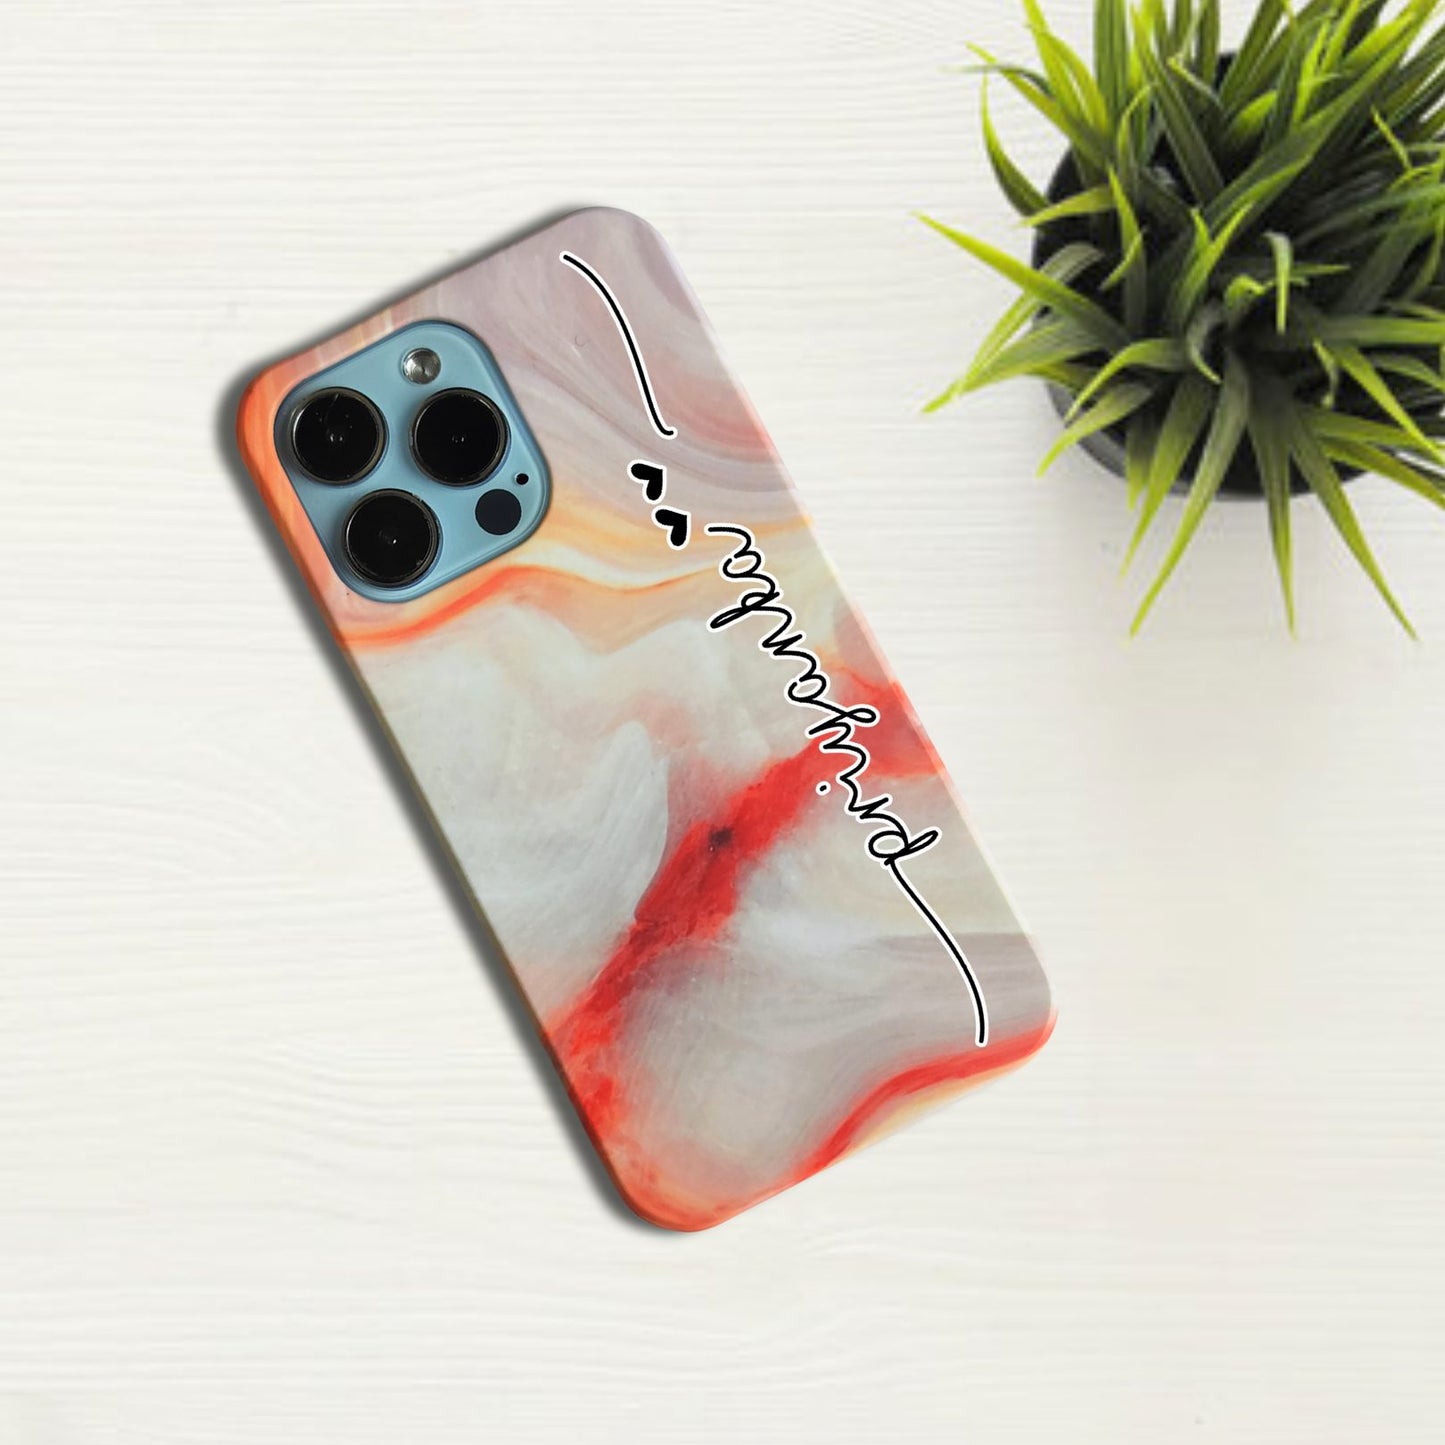 Flotterring Marble Effect V2 Phone Case Cover For Vivo